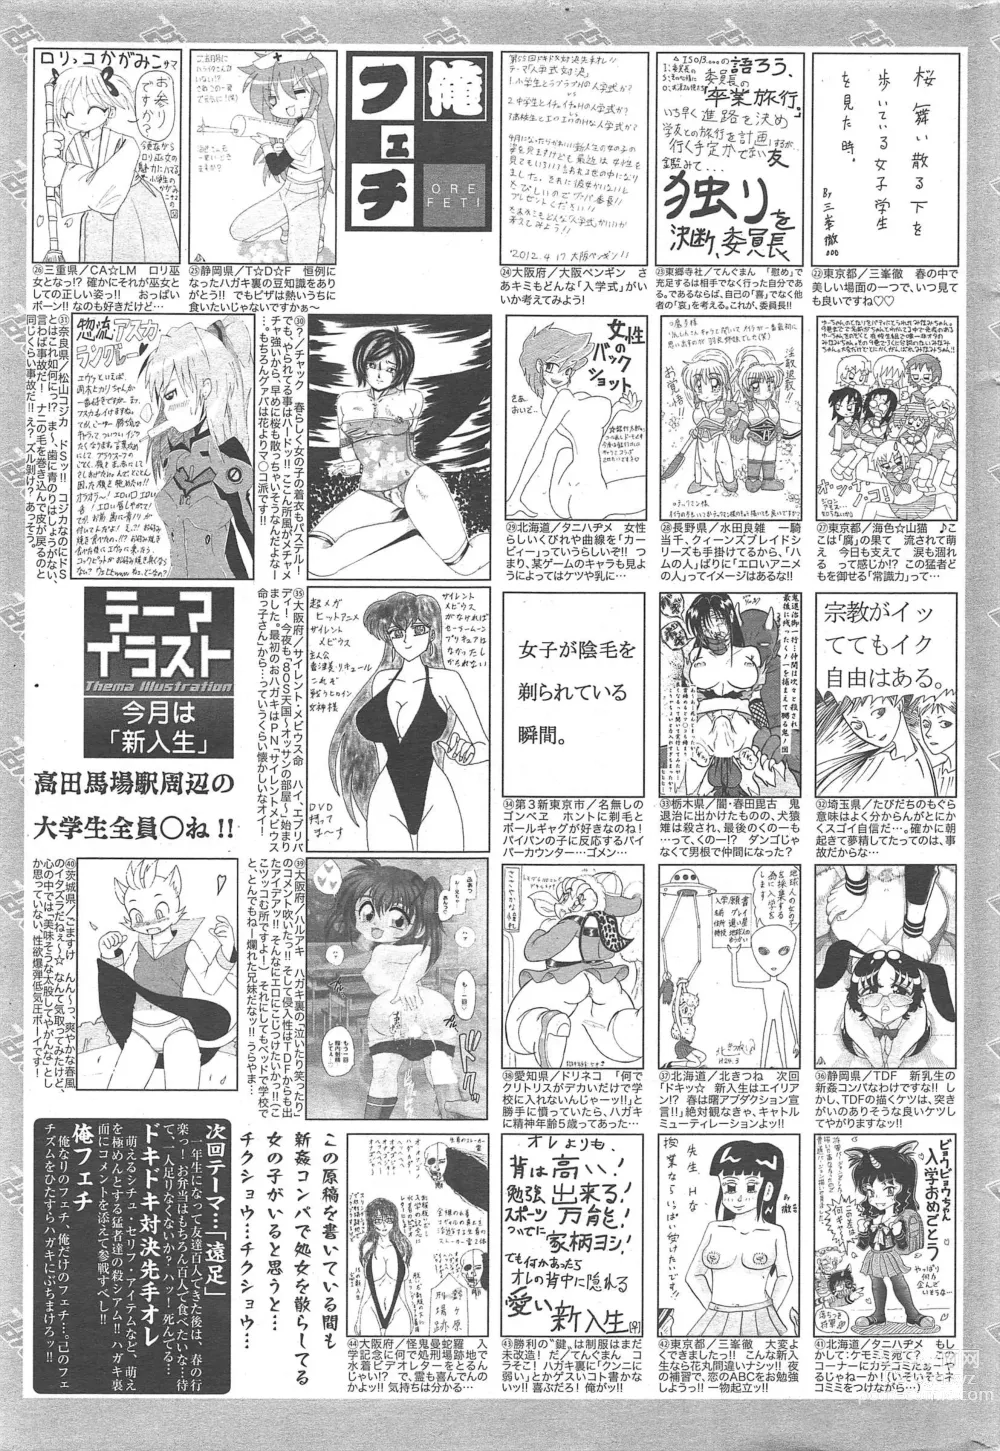 Page 325 of manga Manga Bangaichi 2012-06